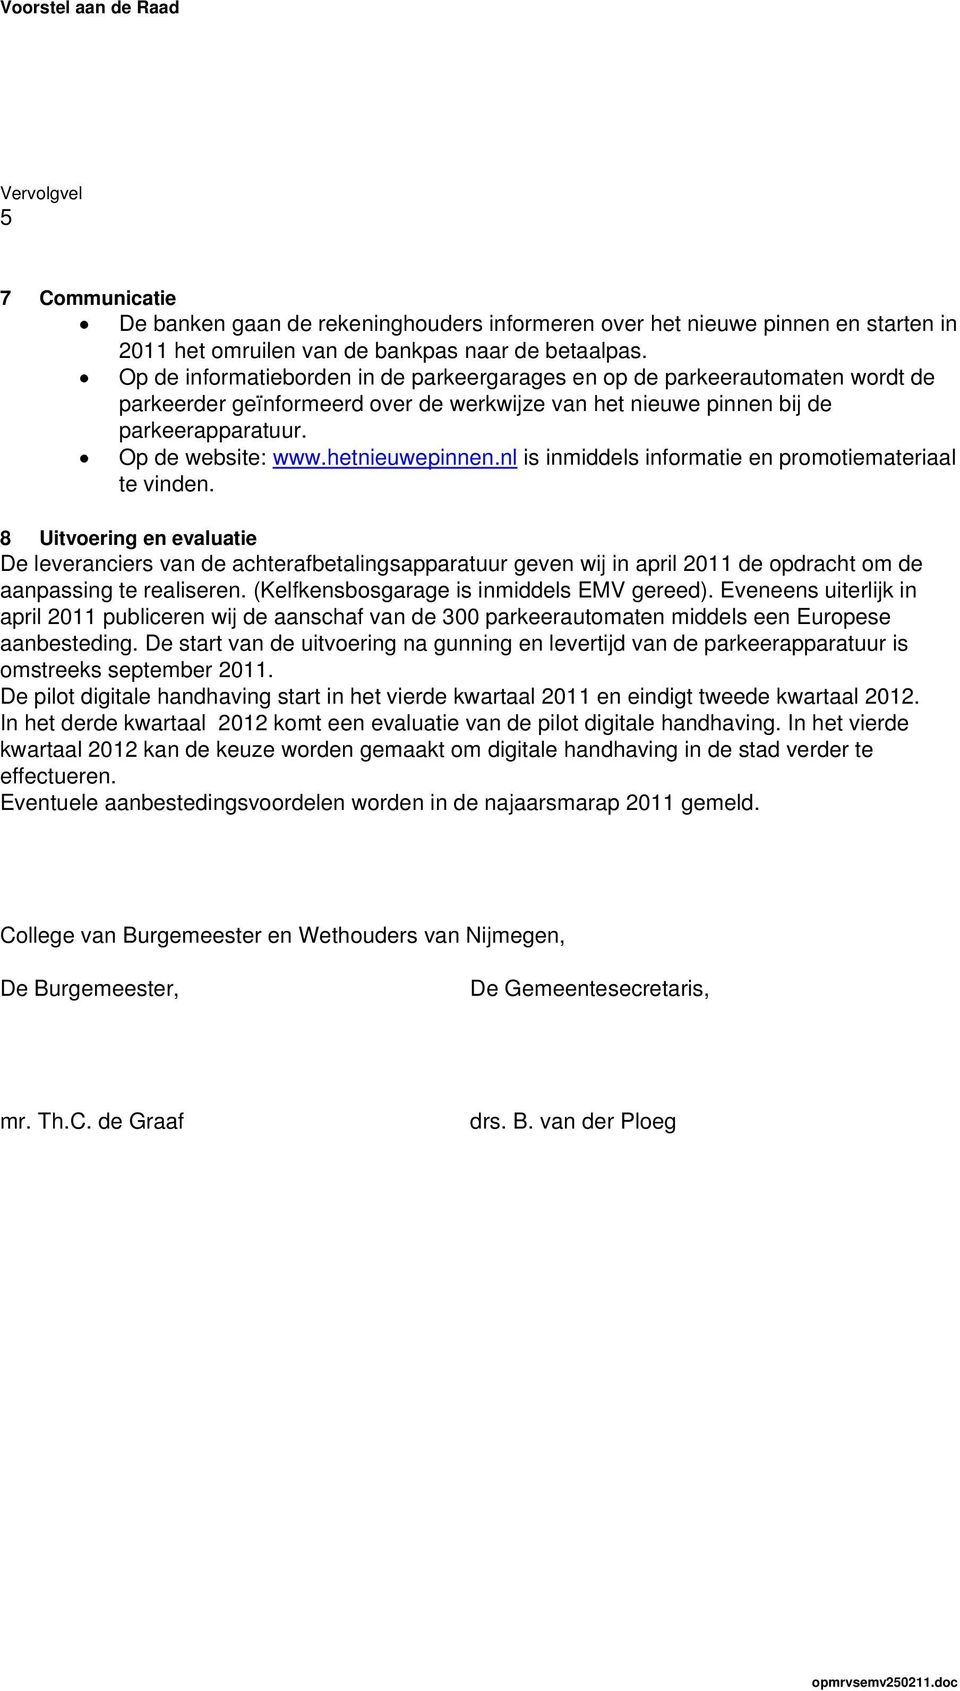 hetnieuwepinnen.nl is inmiddels informatie en promotiemateriaal te vinden.